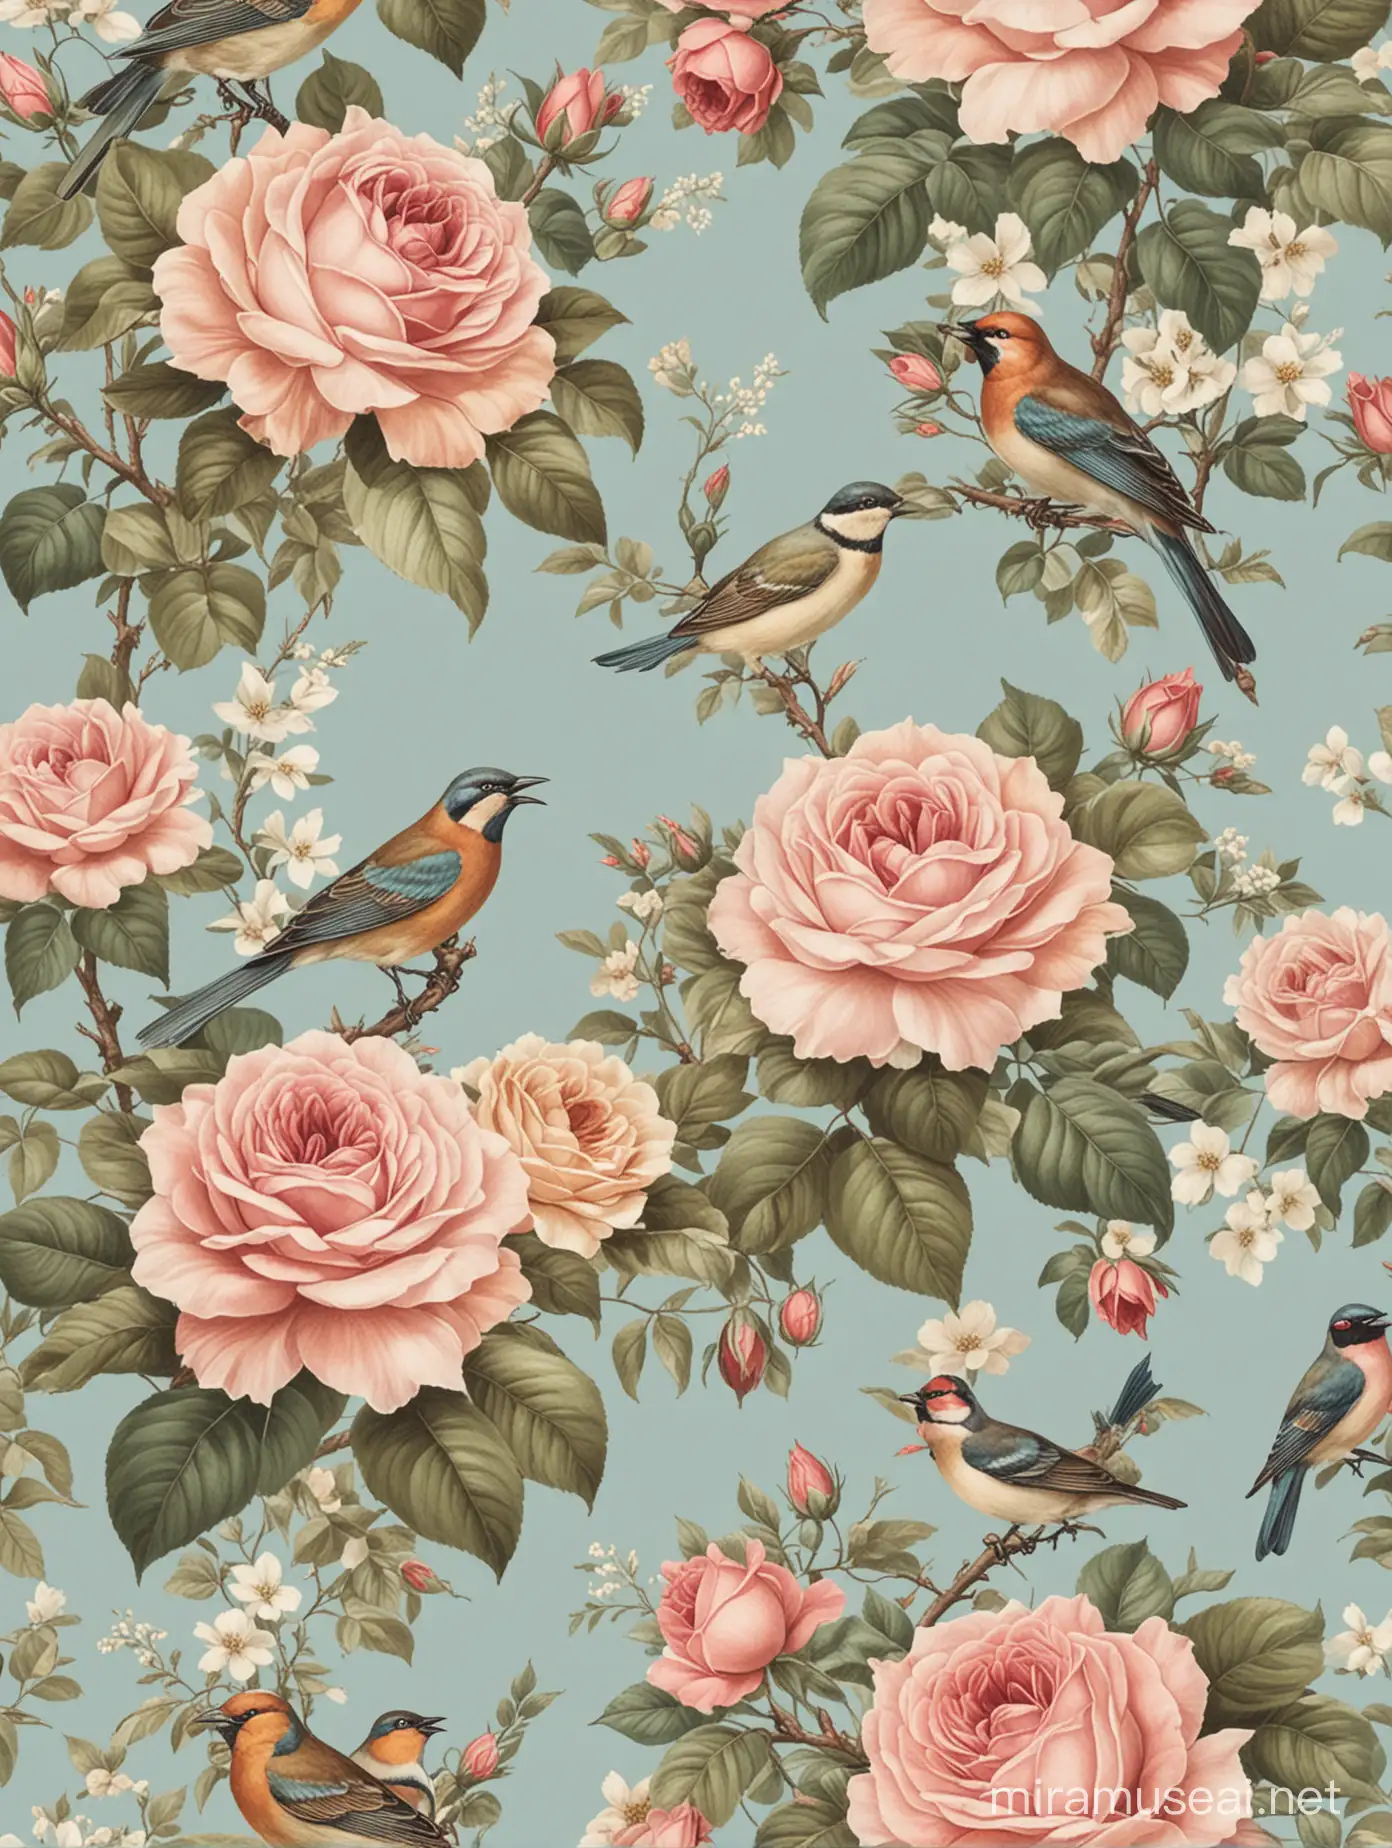 Vintage Rose and Bird Wallpaper Design